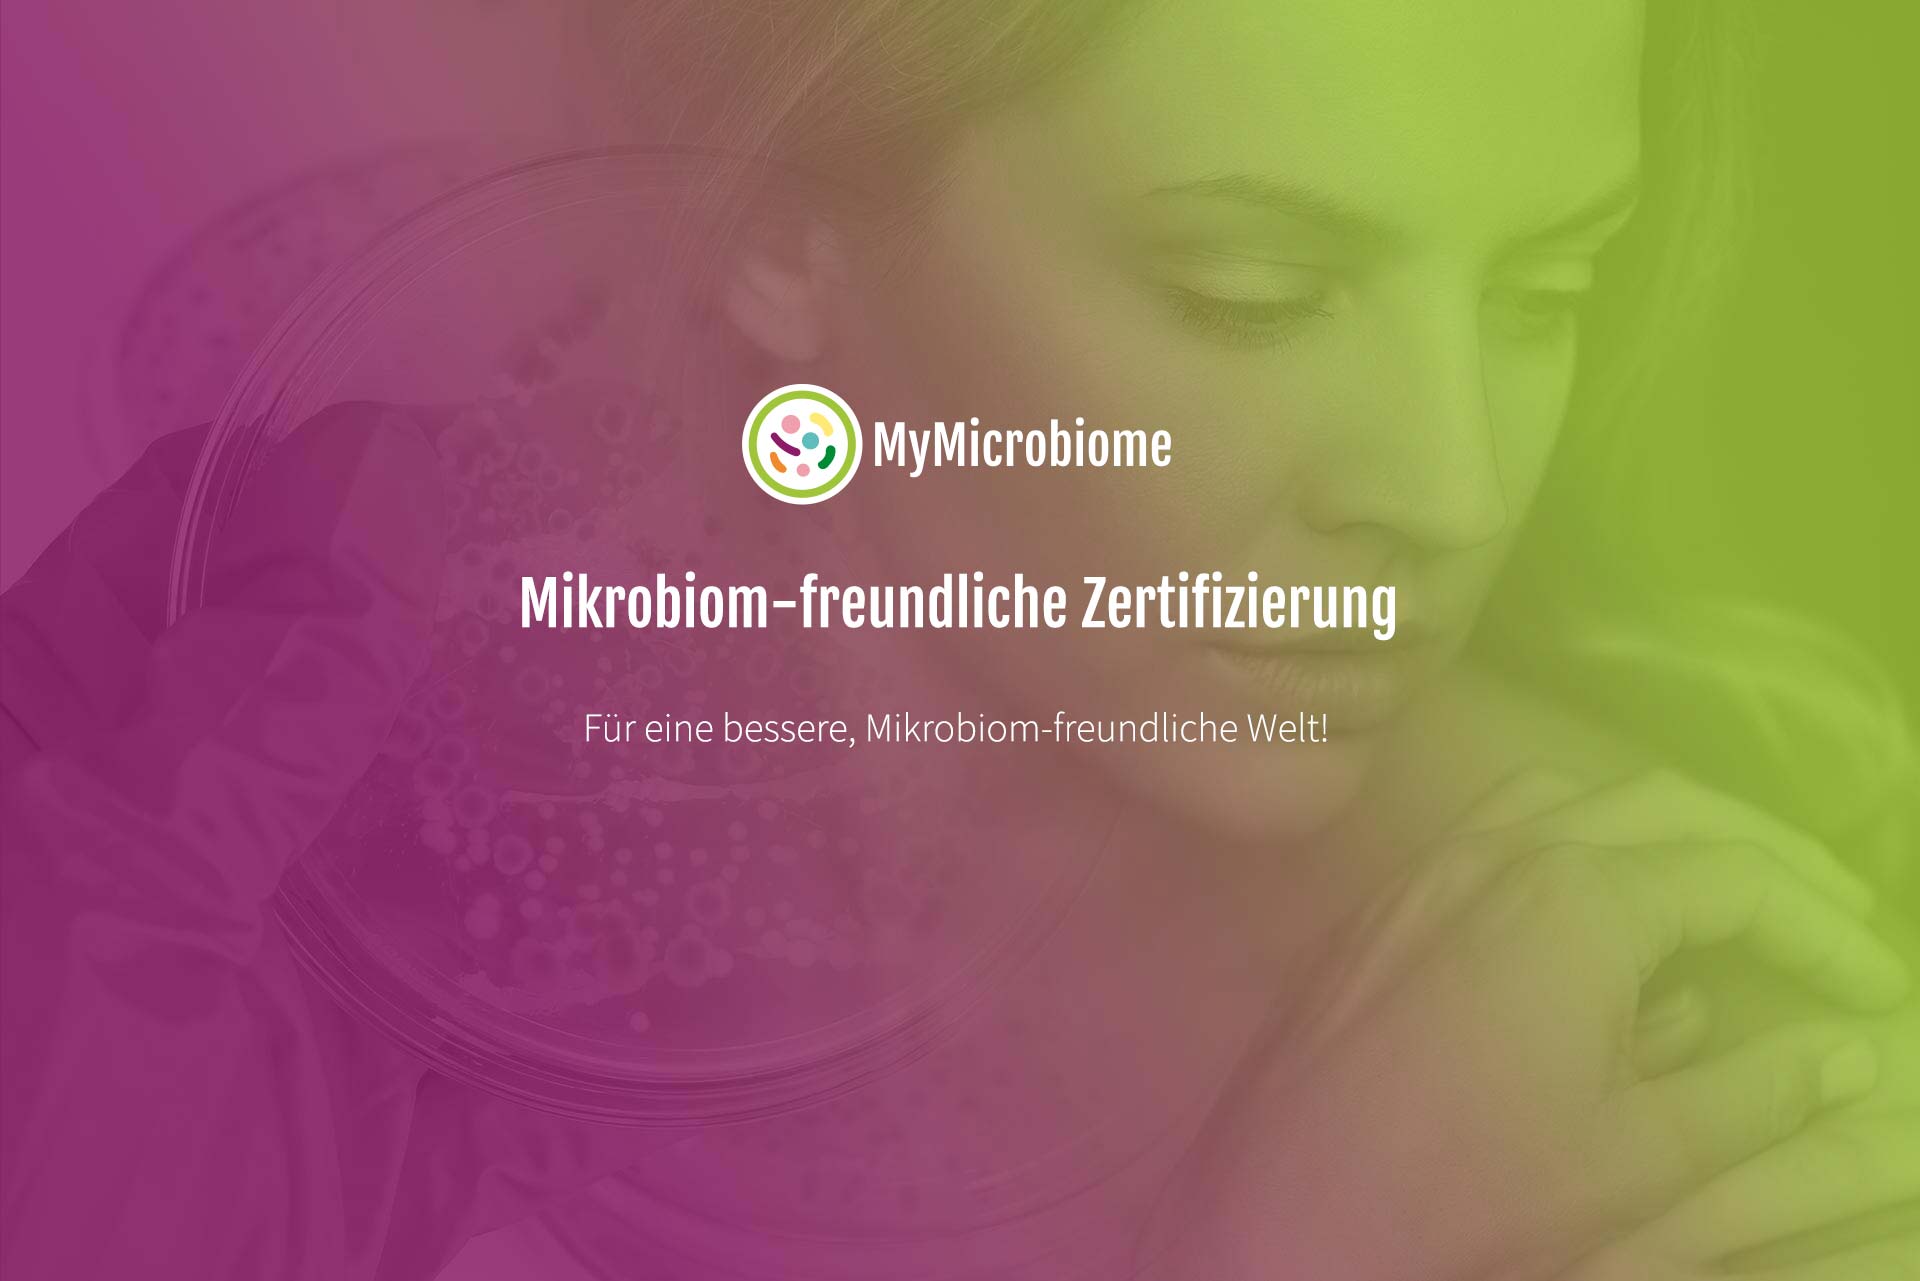 (c) Microbiome-friendly.com